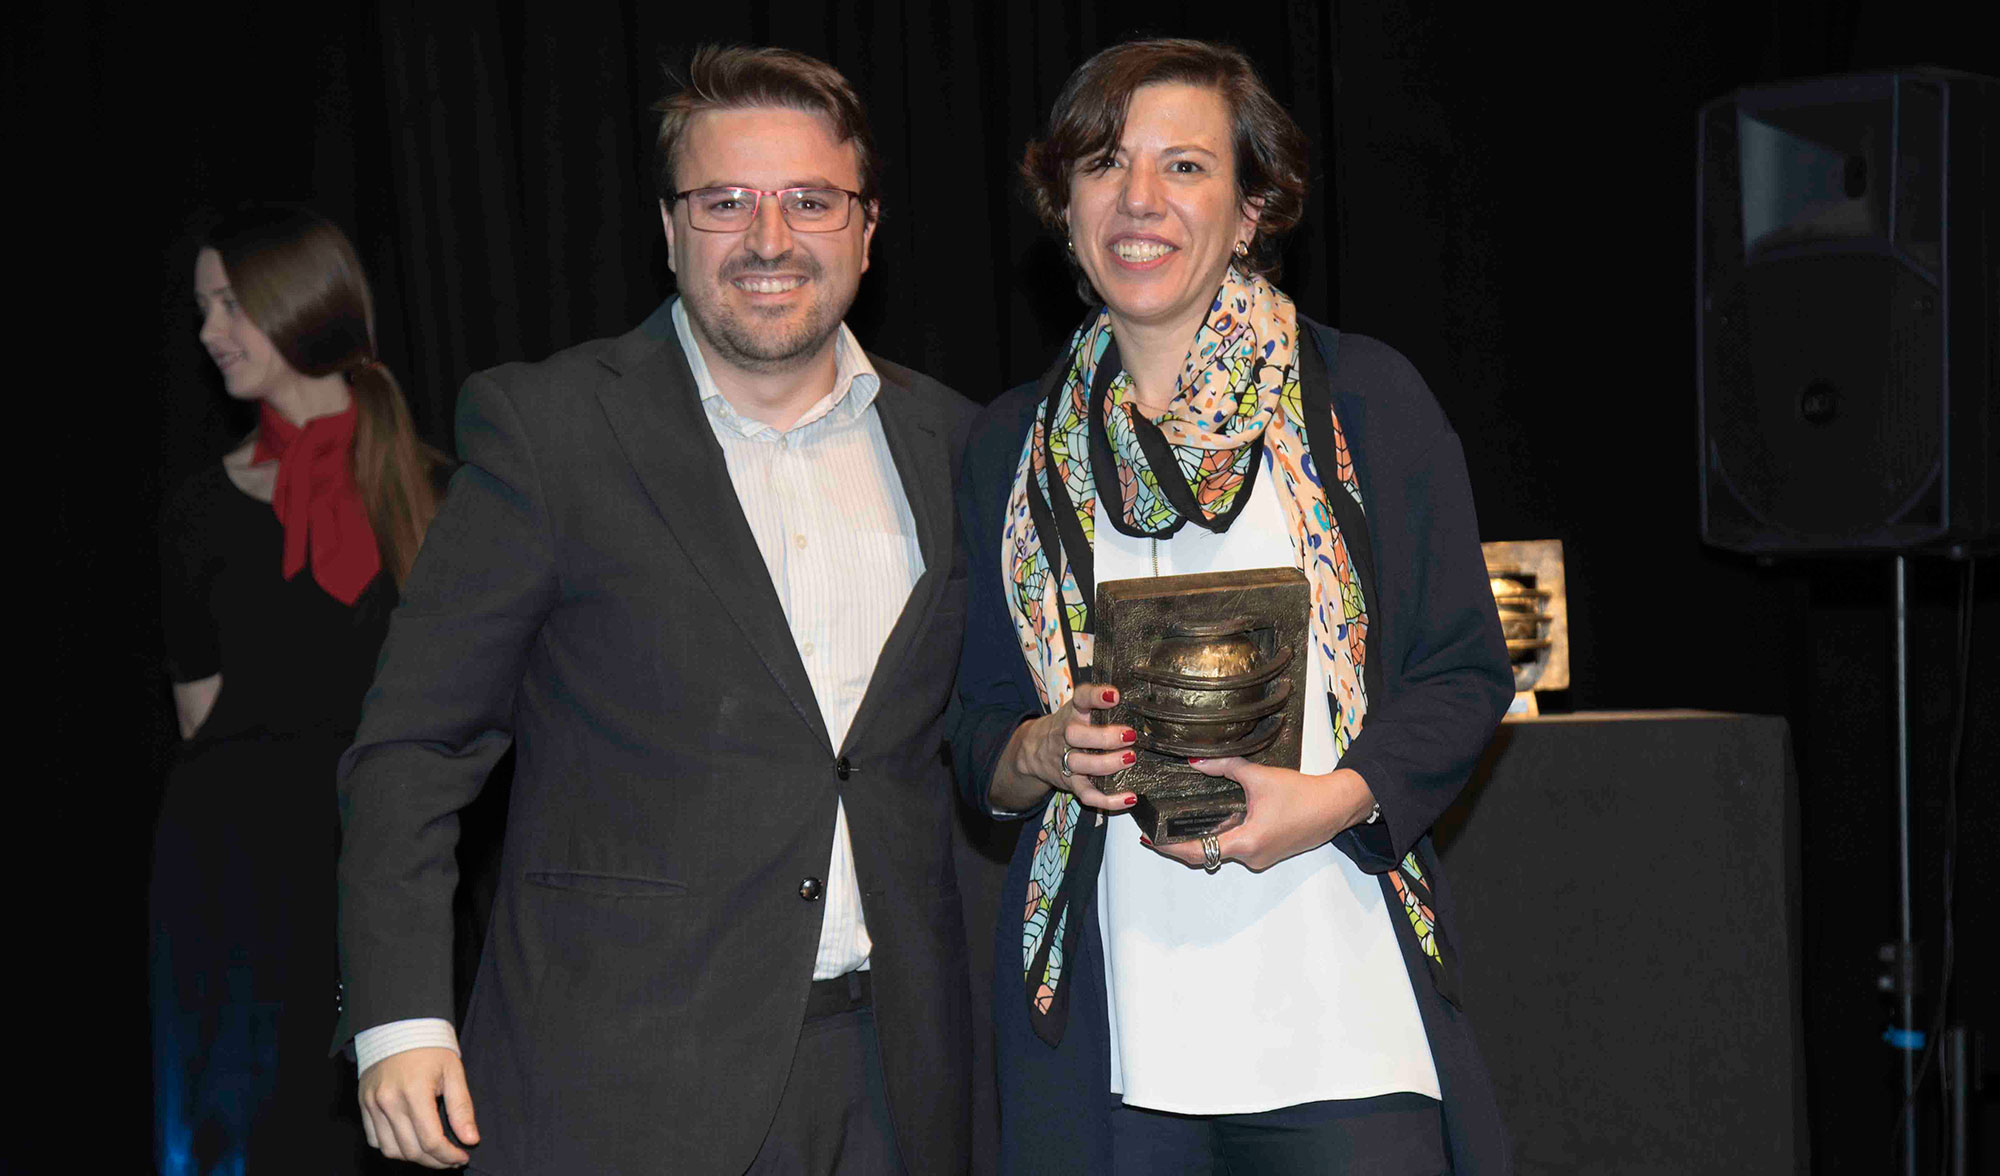 Ana Gobernado, directora de IBM Watson Customer Engagement en Espaa muestra su estatuilla de ganadora, junto a Francisco Javier Gonzlez...